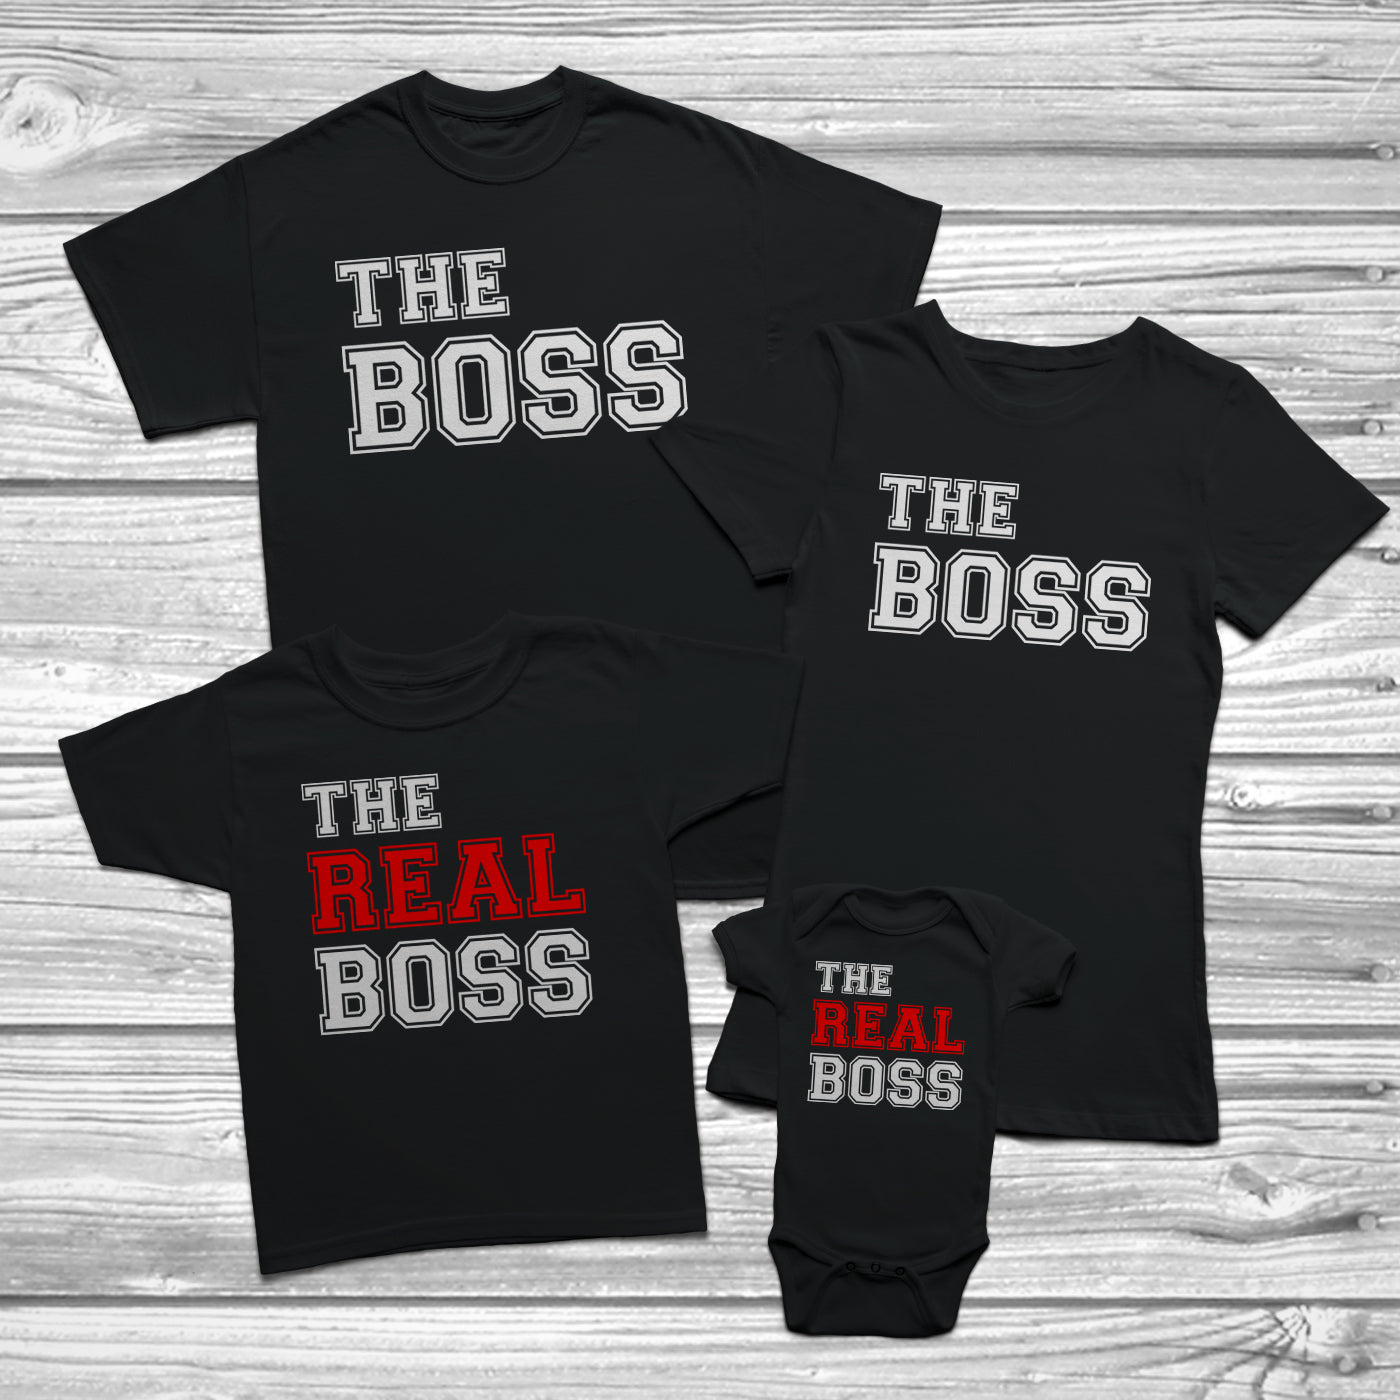 kids boss shirt